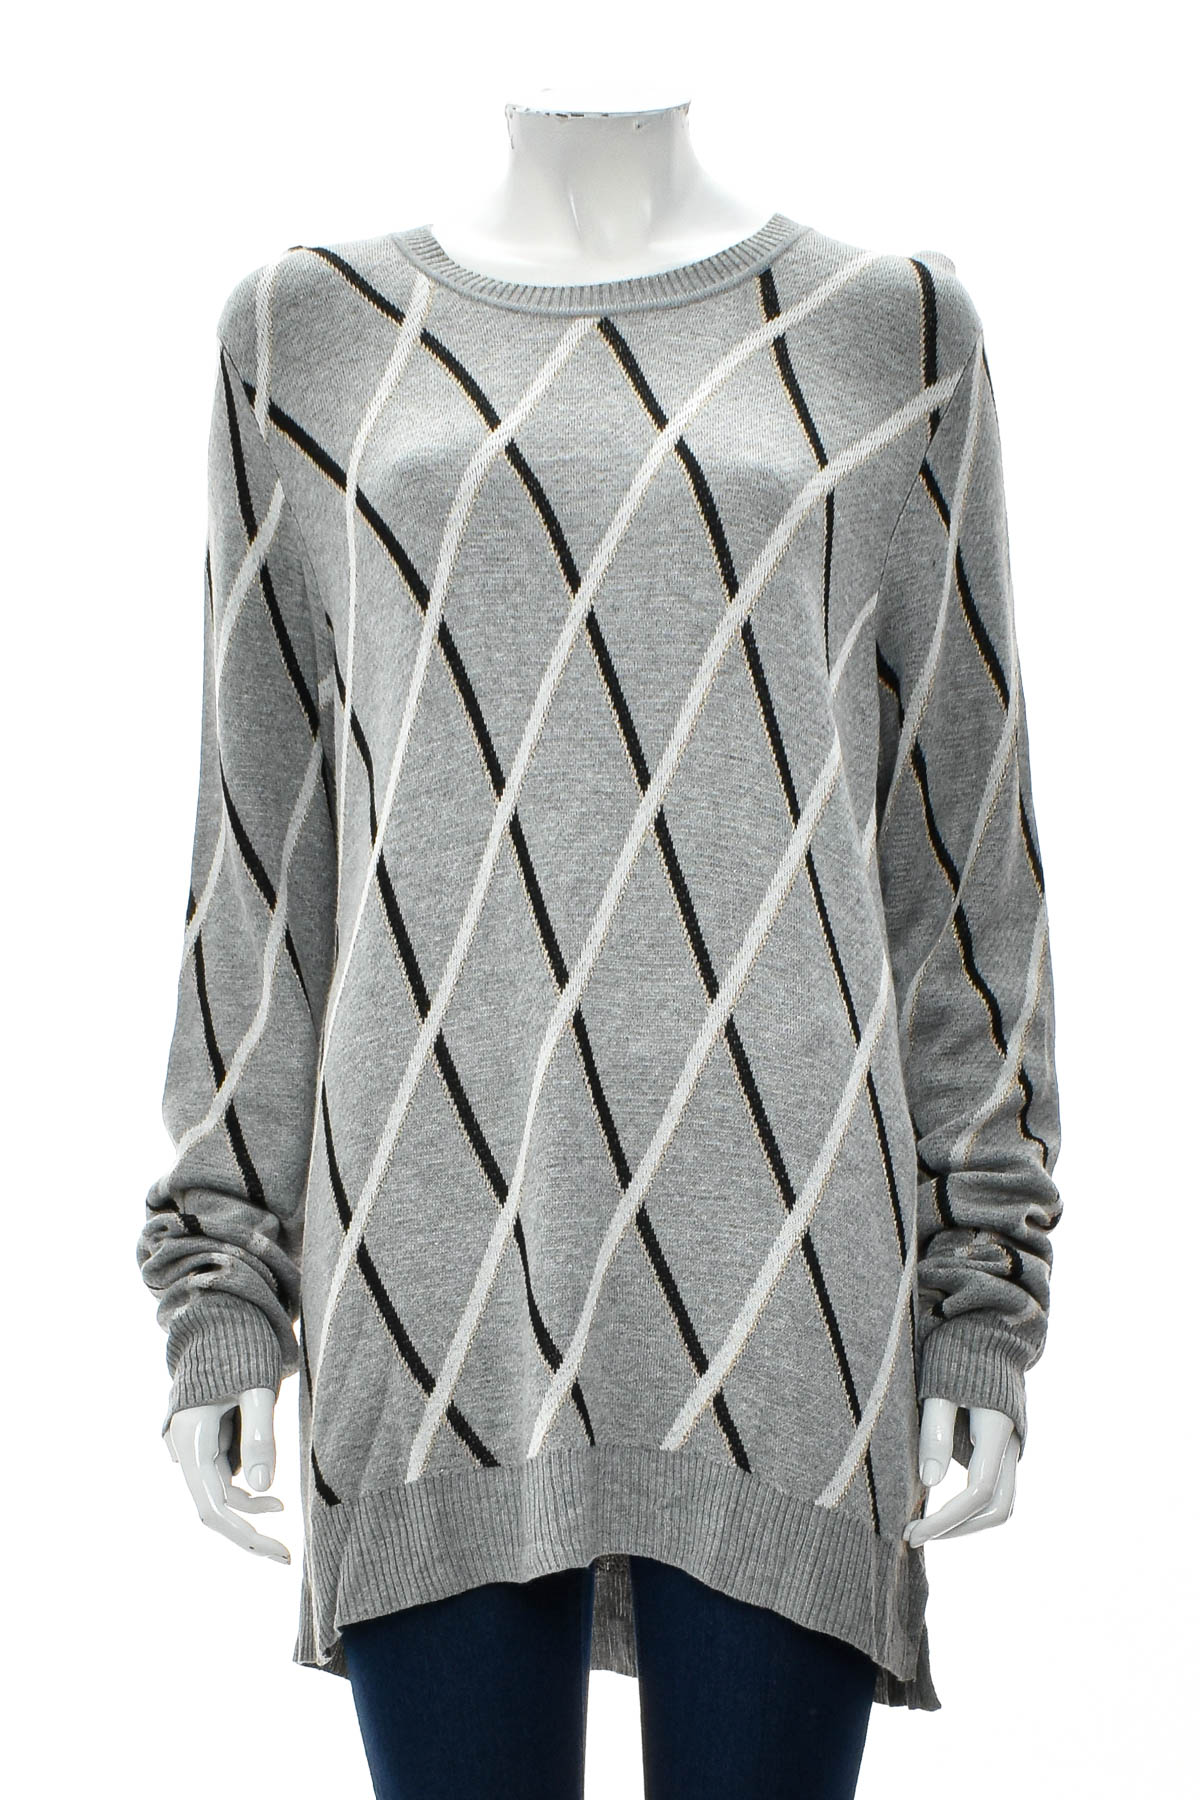 Women's sweater - KHOKO - 0